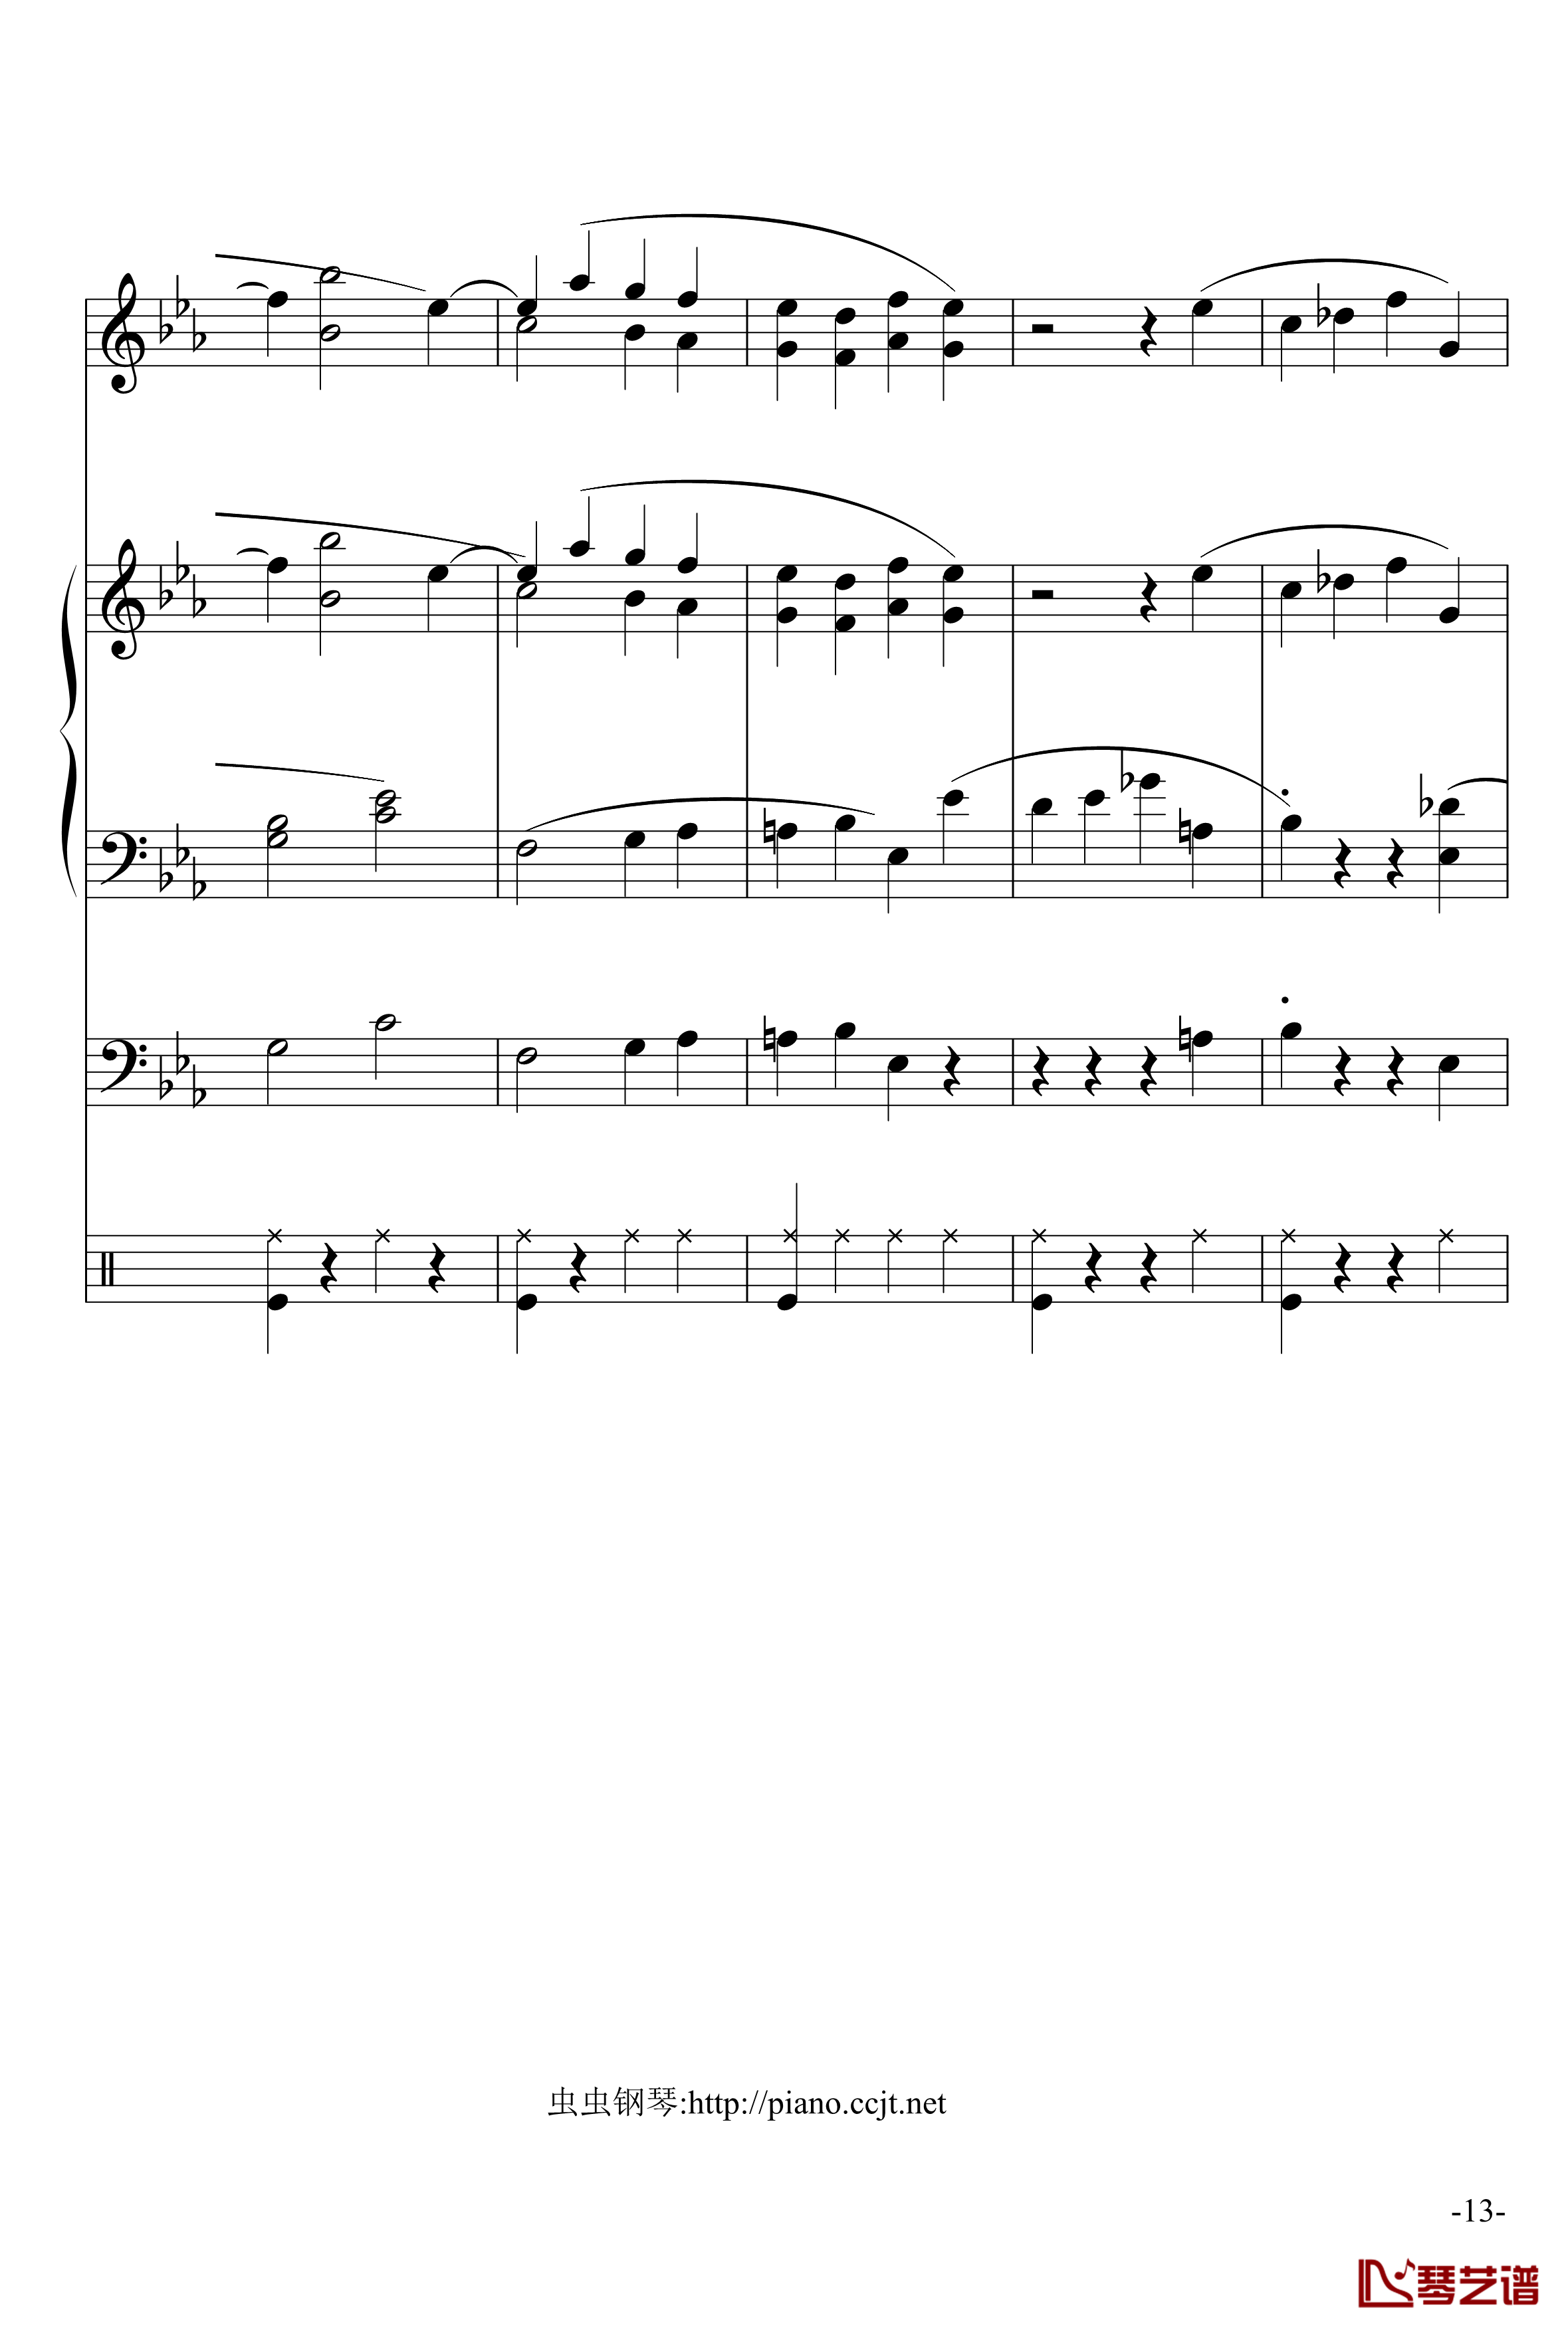 悲怆奏鸣曲钢琴谱-加小乐队-贝多芬-beethoven13